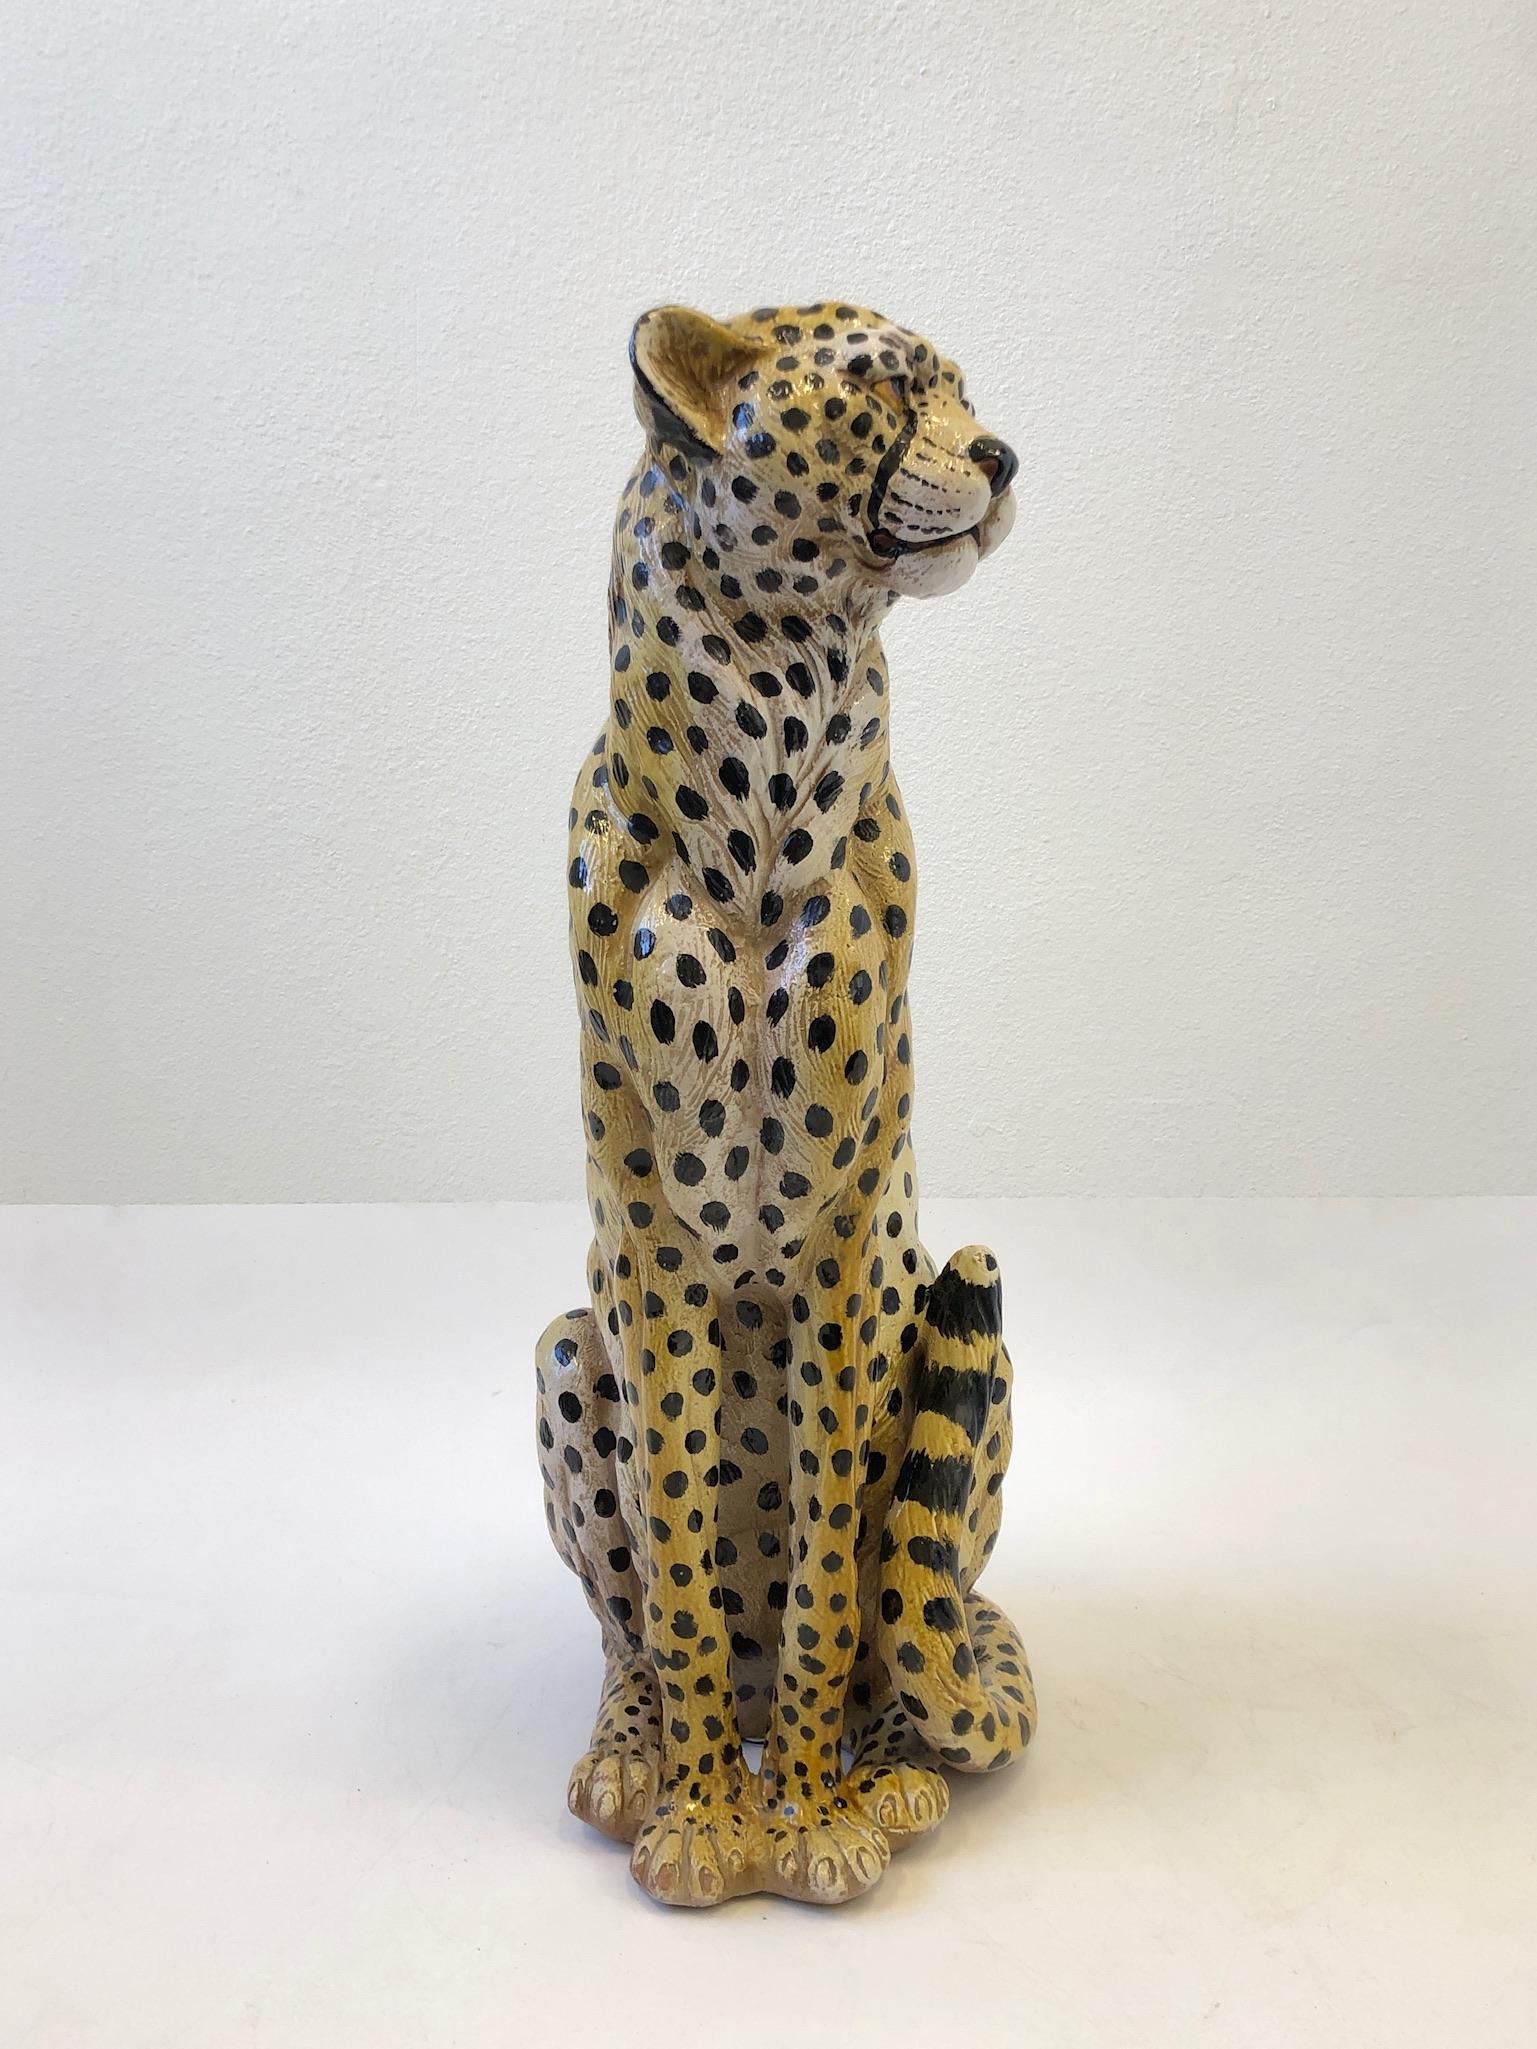 Italienische Gepard-Skulptur aus Keramik 1